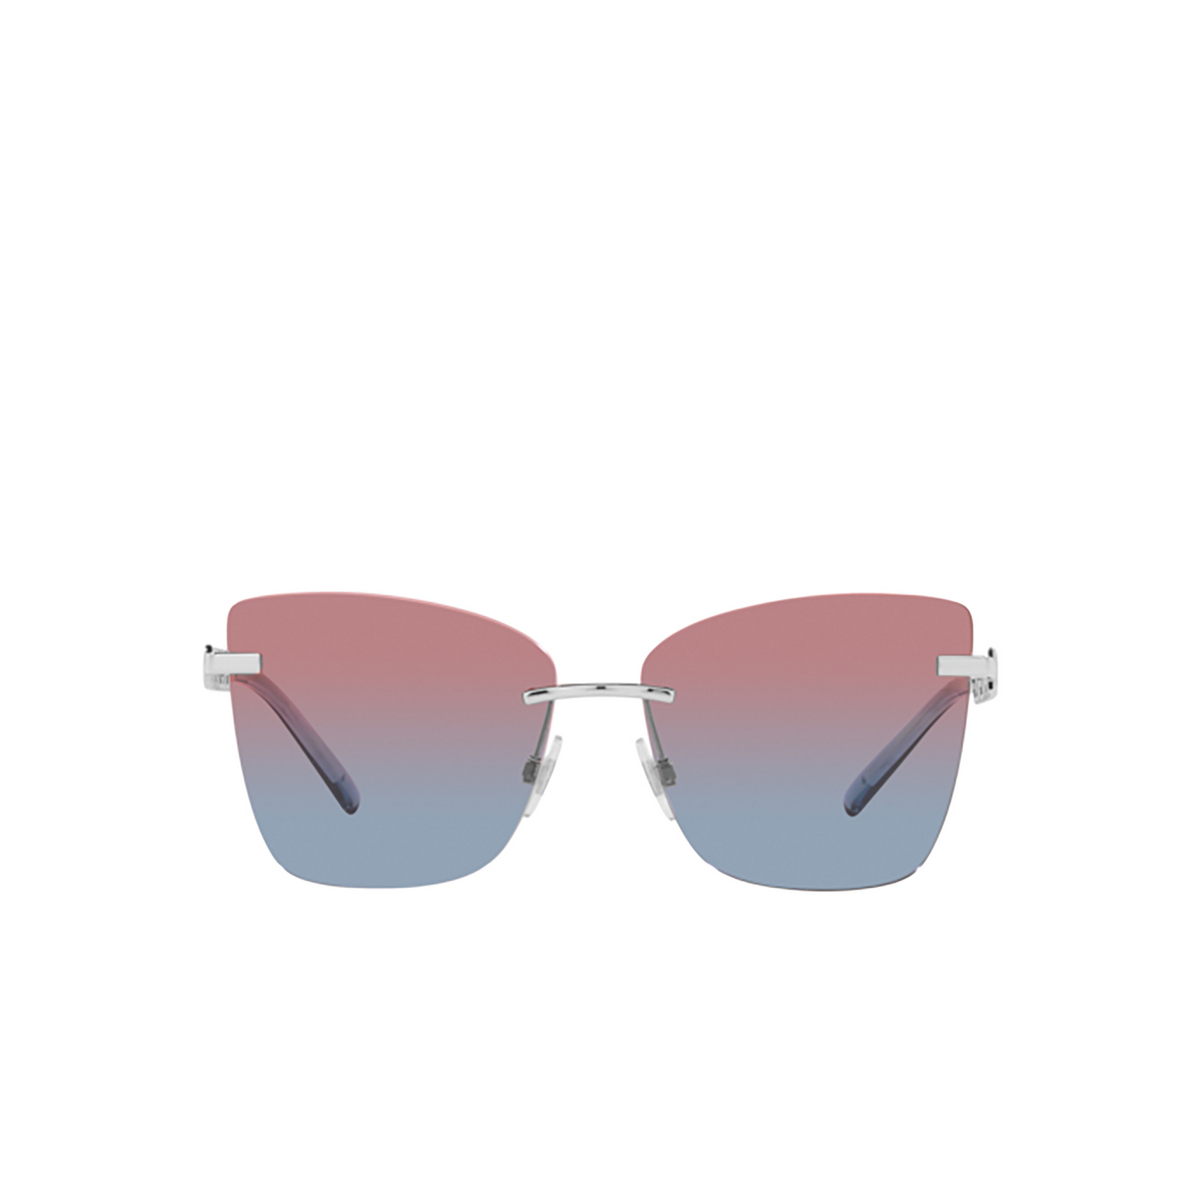 Dolce & Gabbana DG2289 Sunglasses 05/0Q Silver/violet - front view